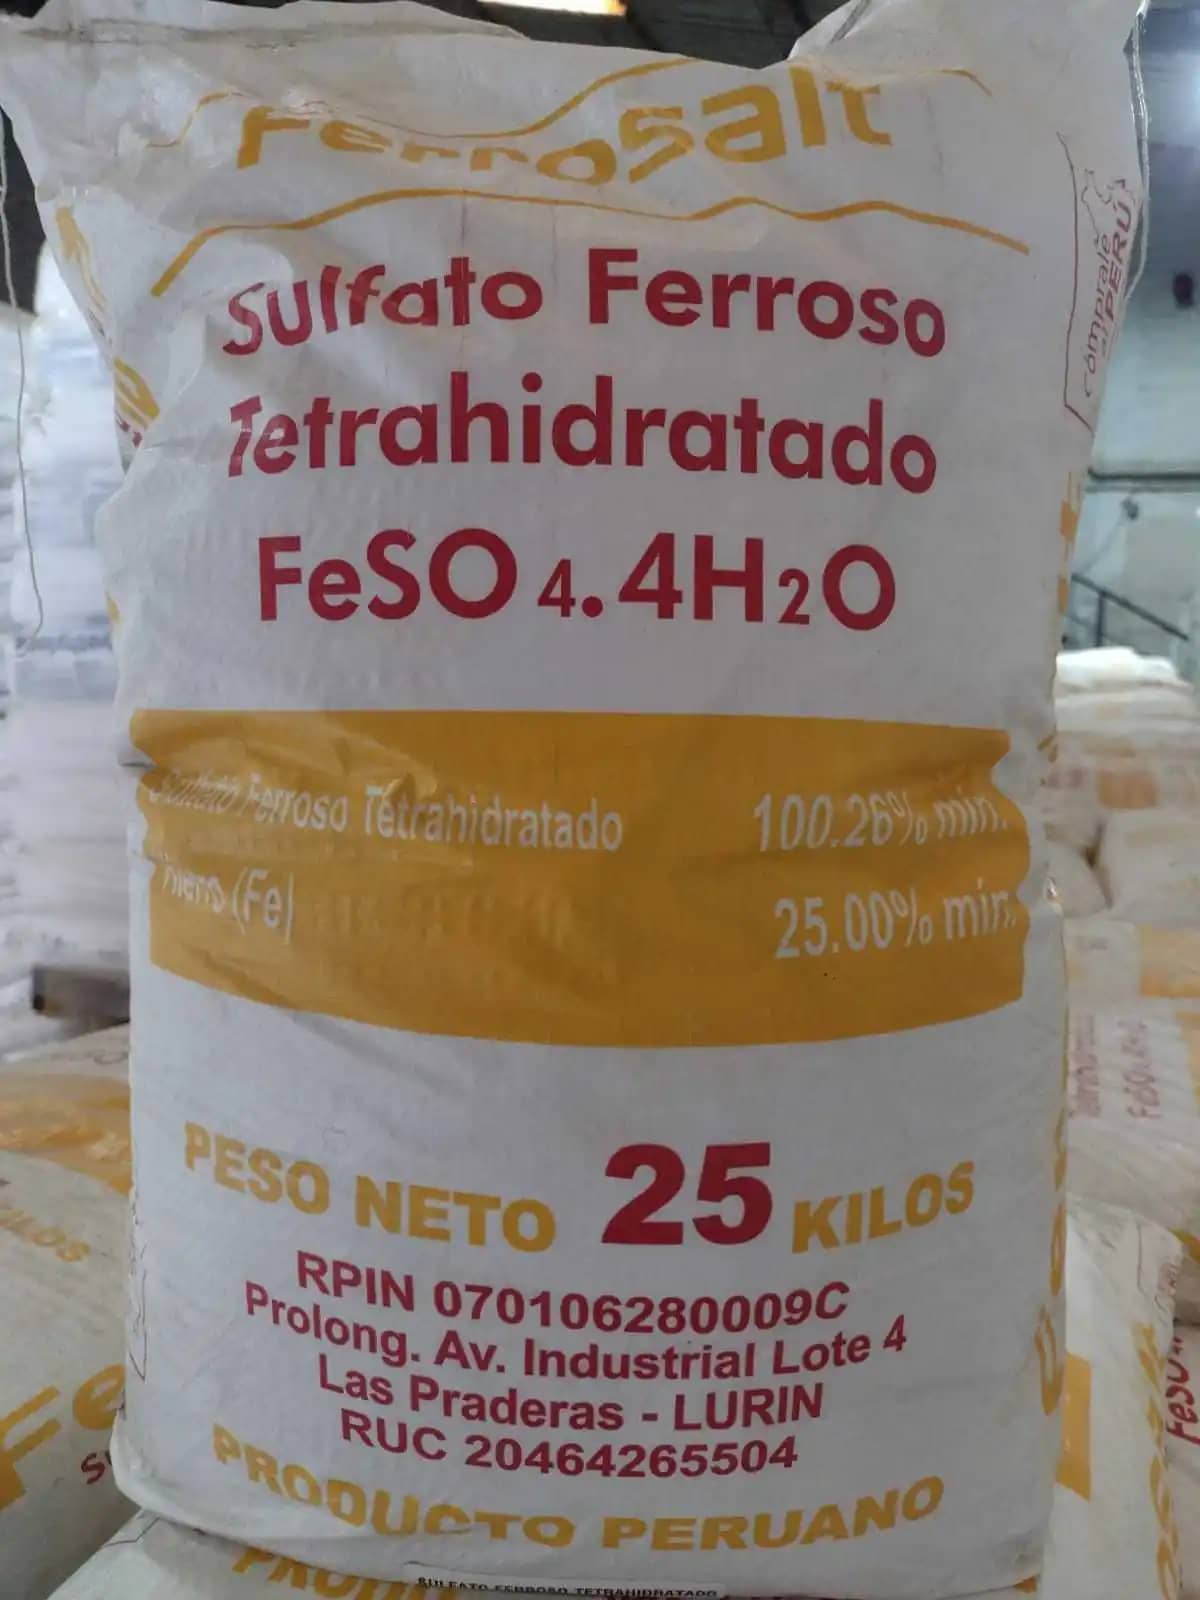 Sulfato Ferroso Tetrahidratado